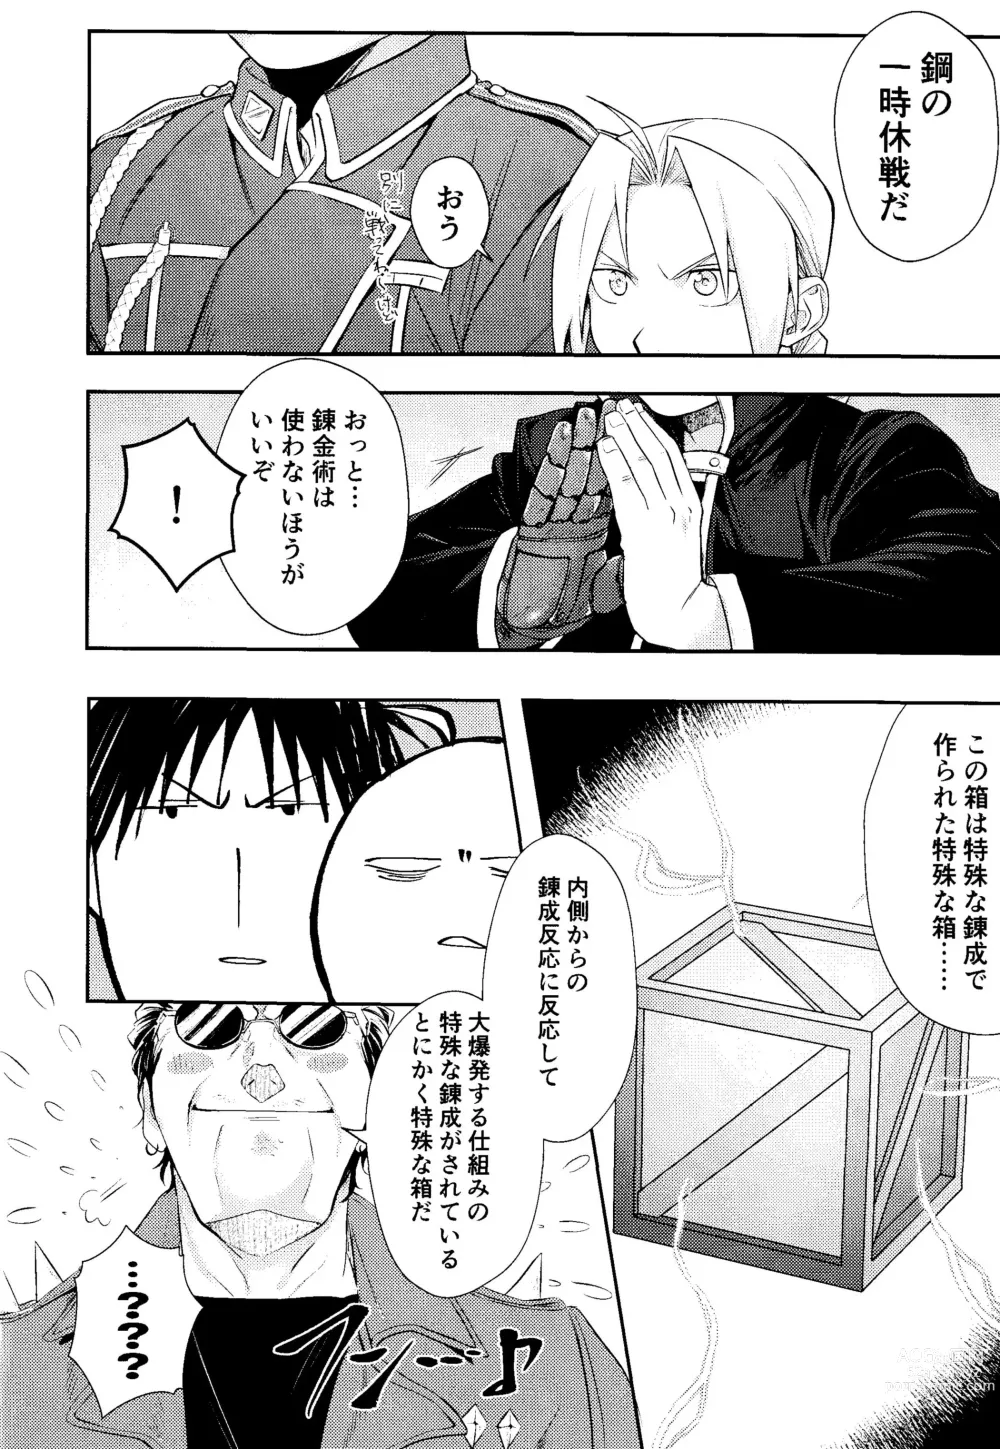 Page 7 of doujinshi Cliche!